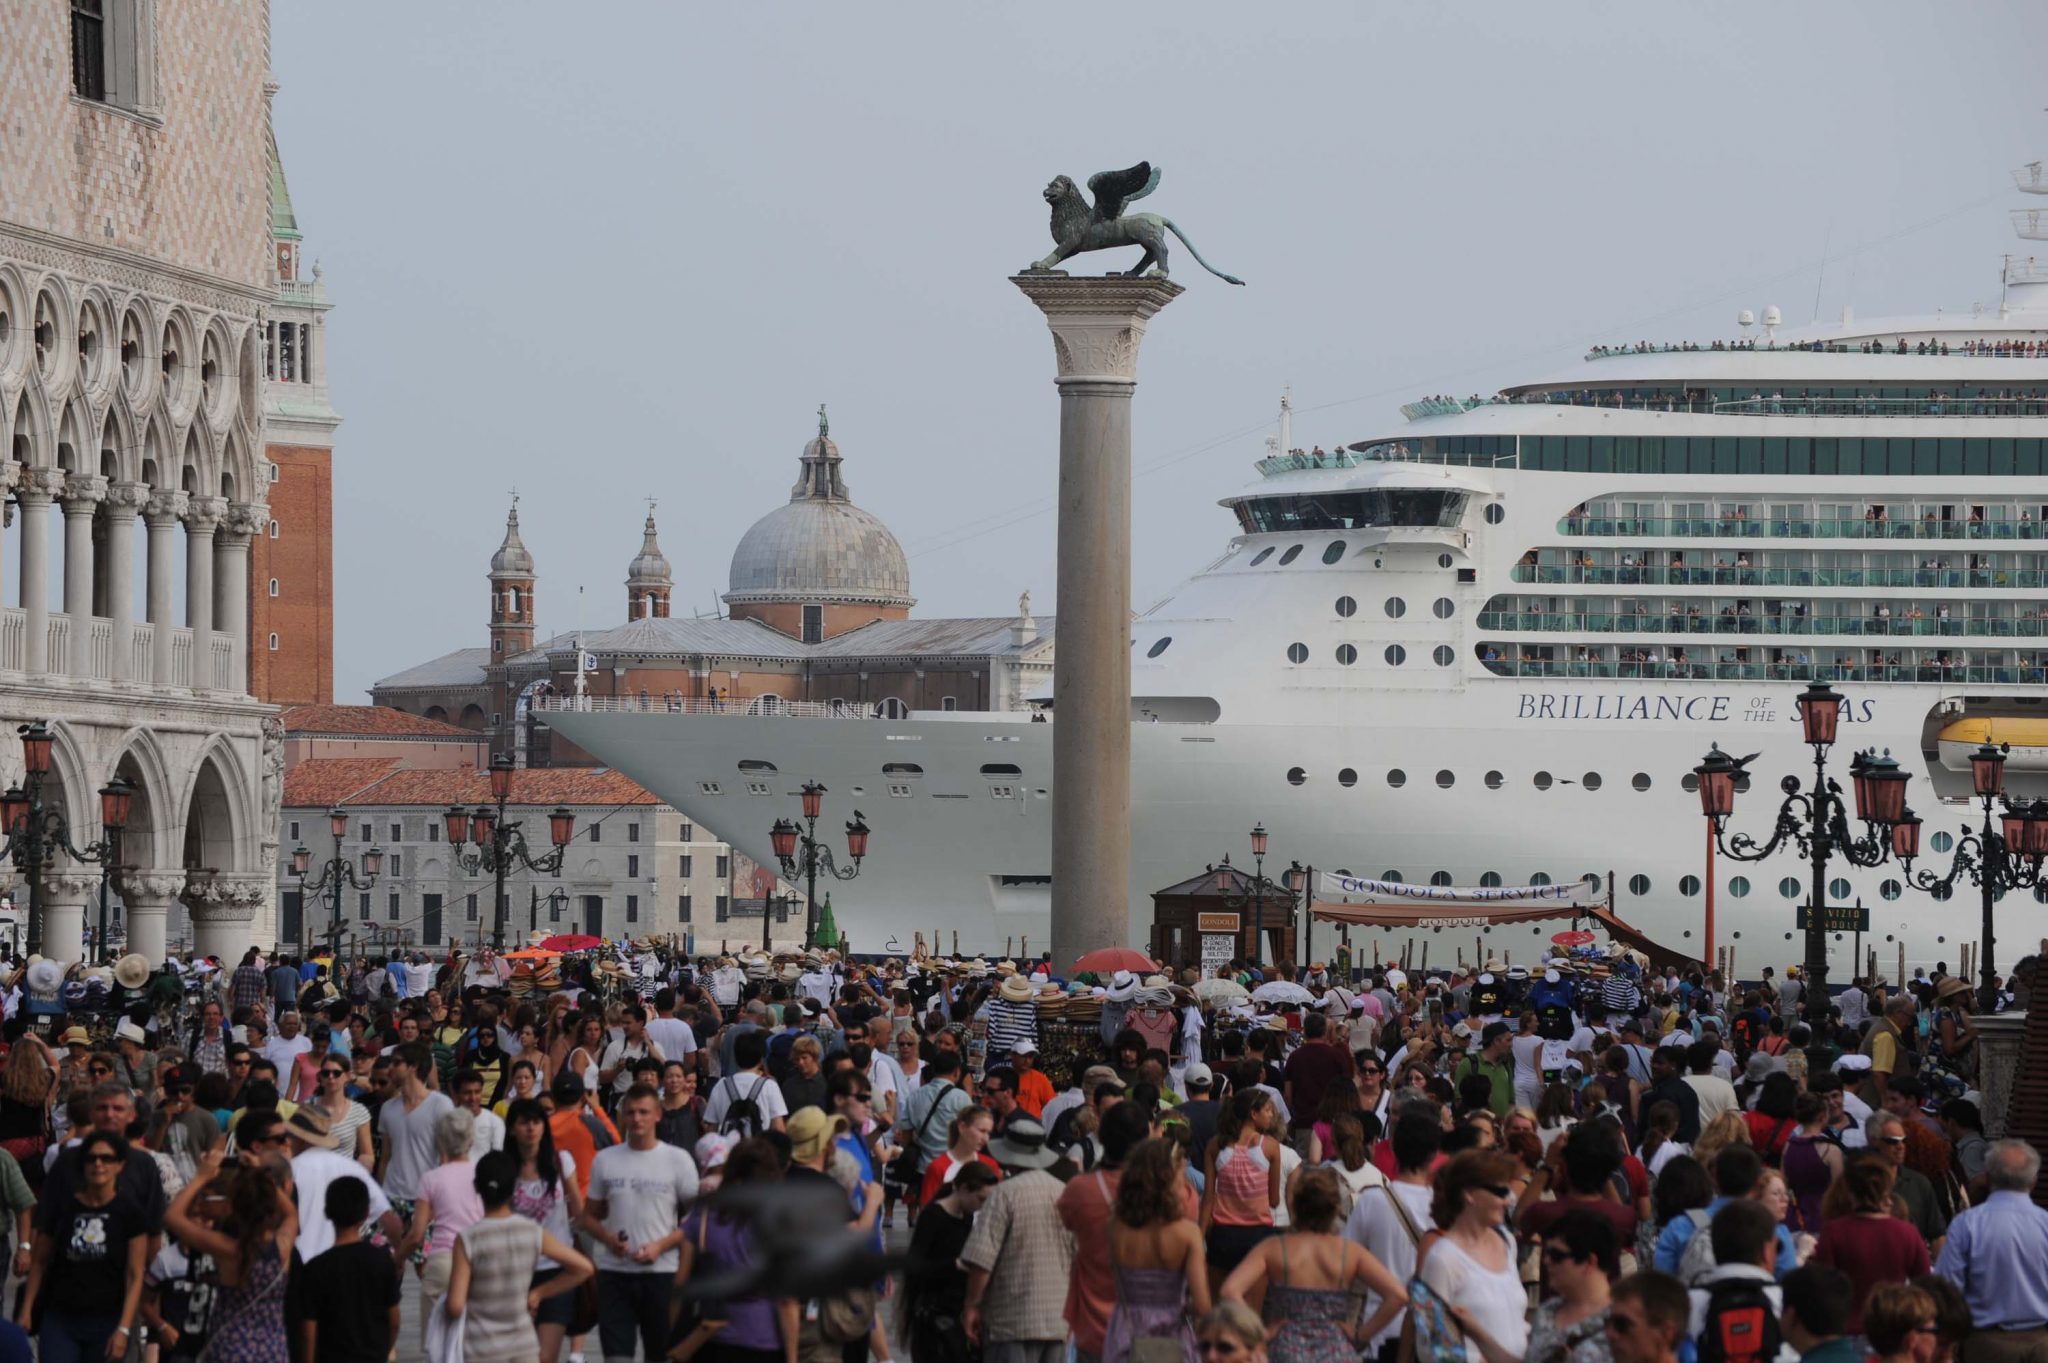 “Basta navi da Crociera a San Marco”. Un incidente riapre il dibattito, parla Bonisoli